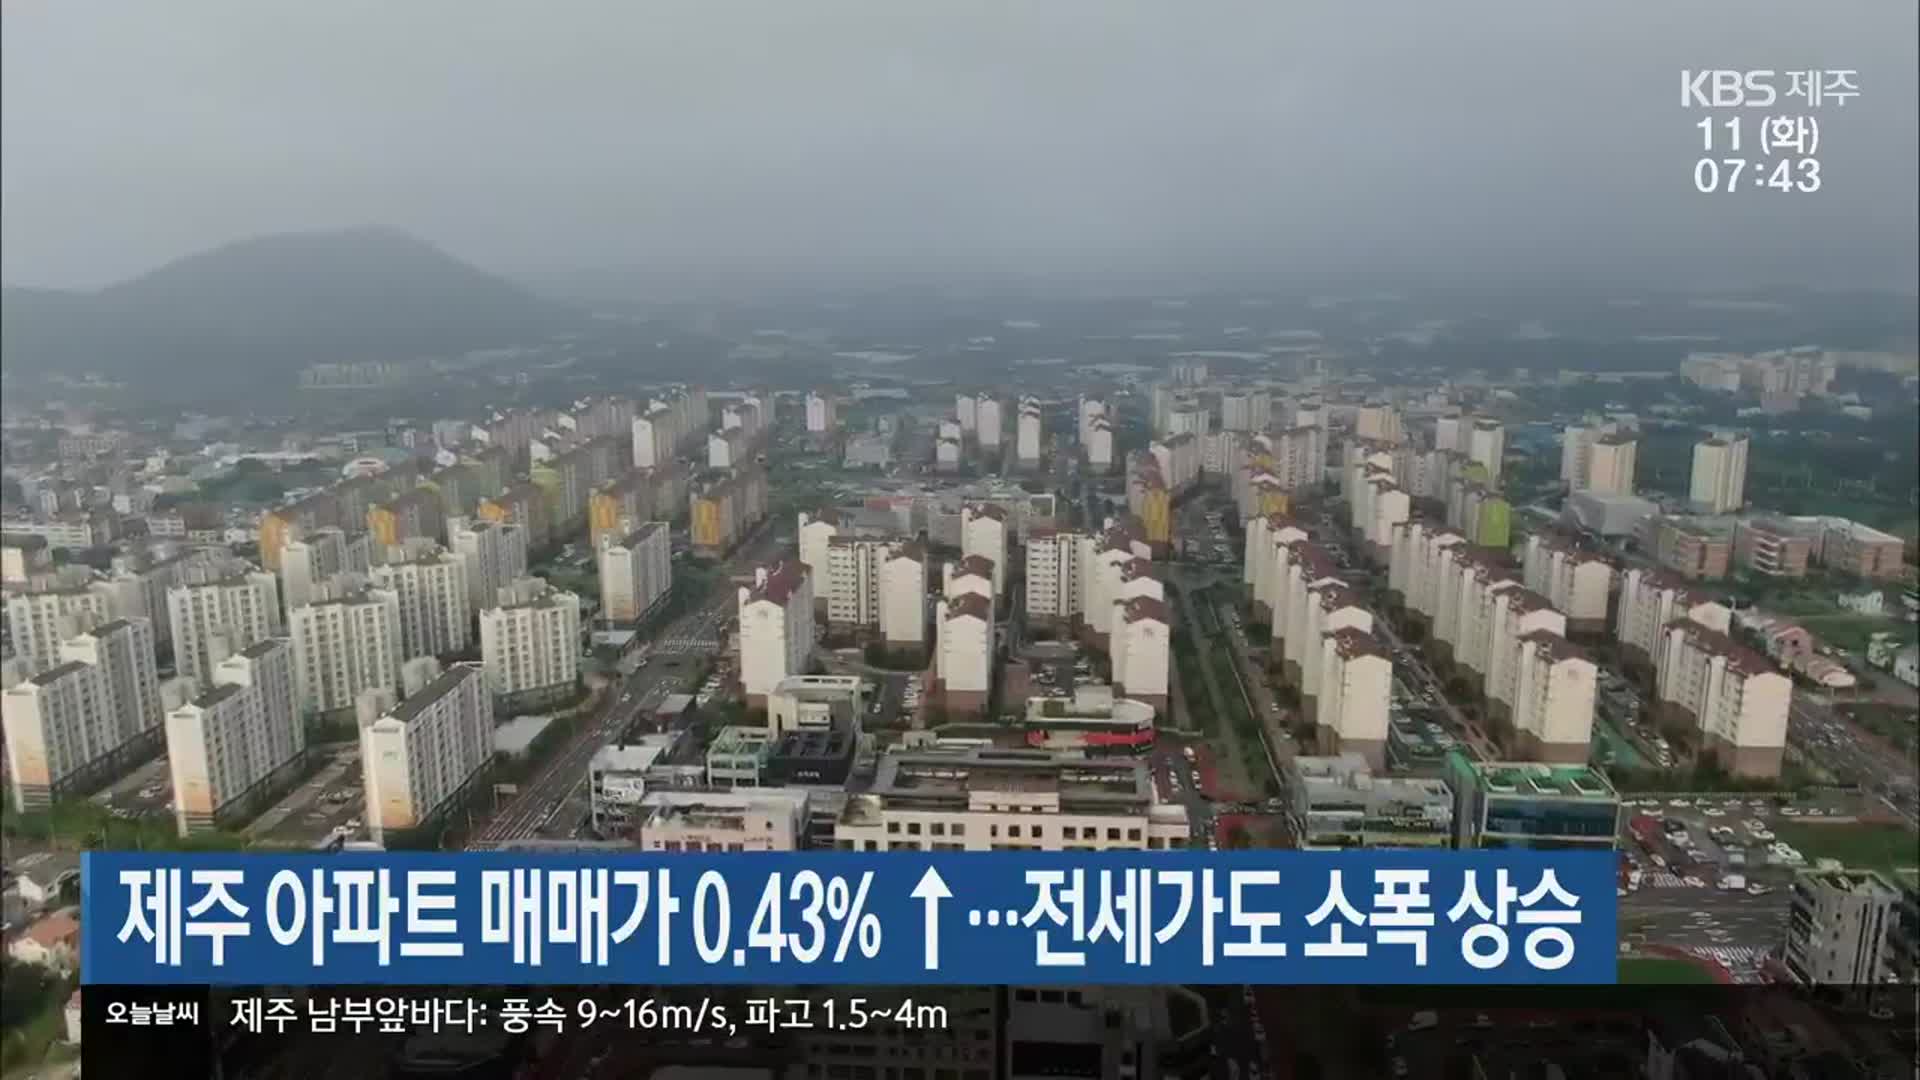 제주 아파트 매매가 0.43% ↑·전세가도 소폭 상승